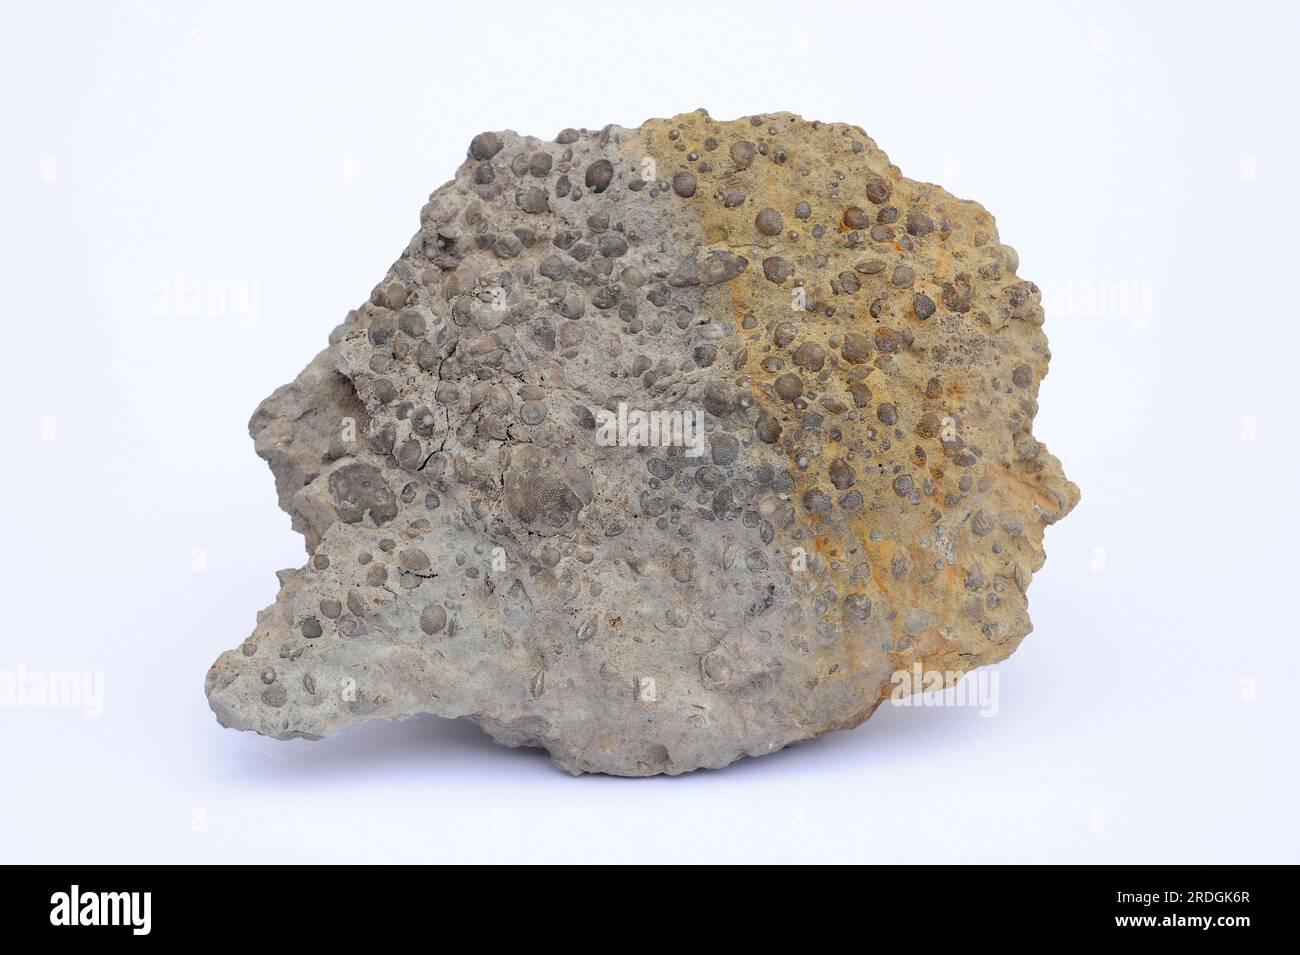 Mineralatlas Lexikon - pisiform limestone